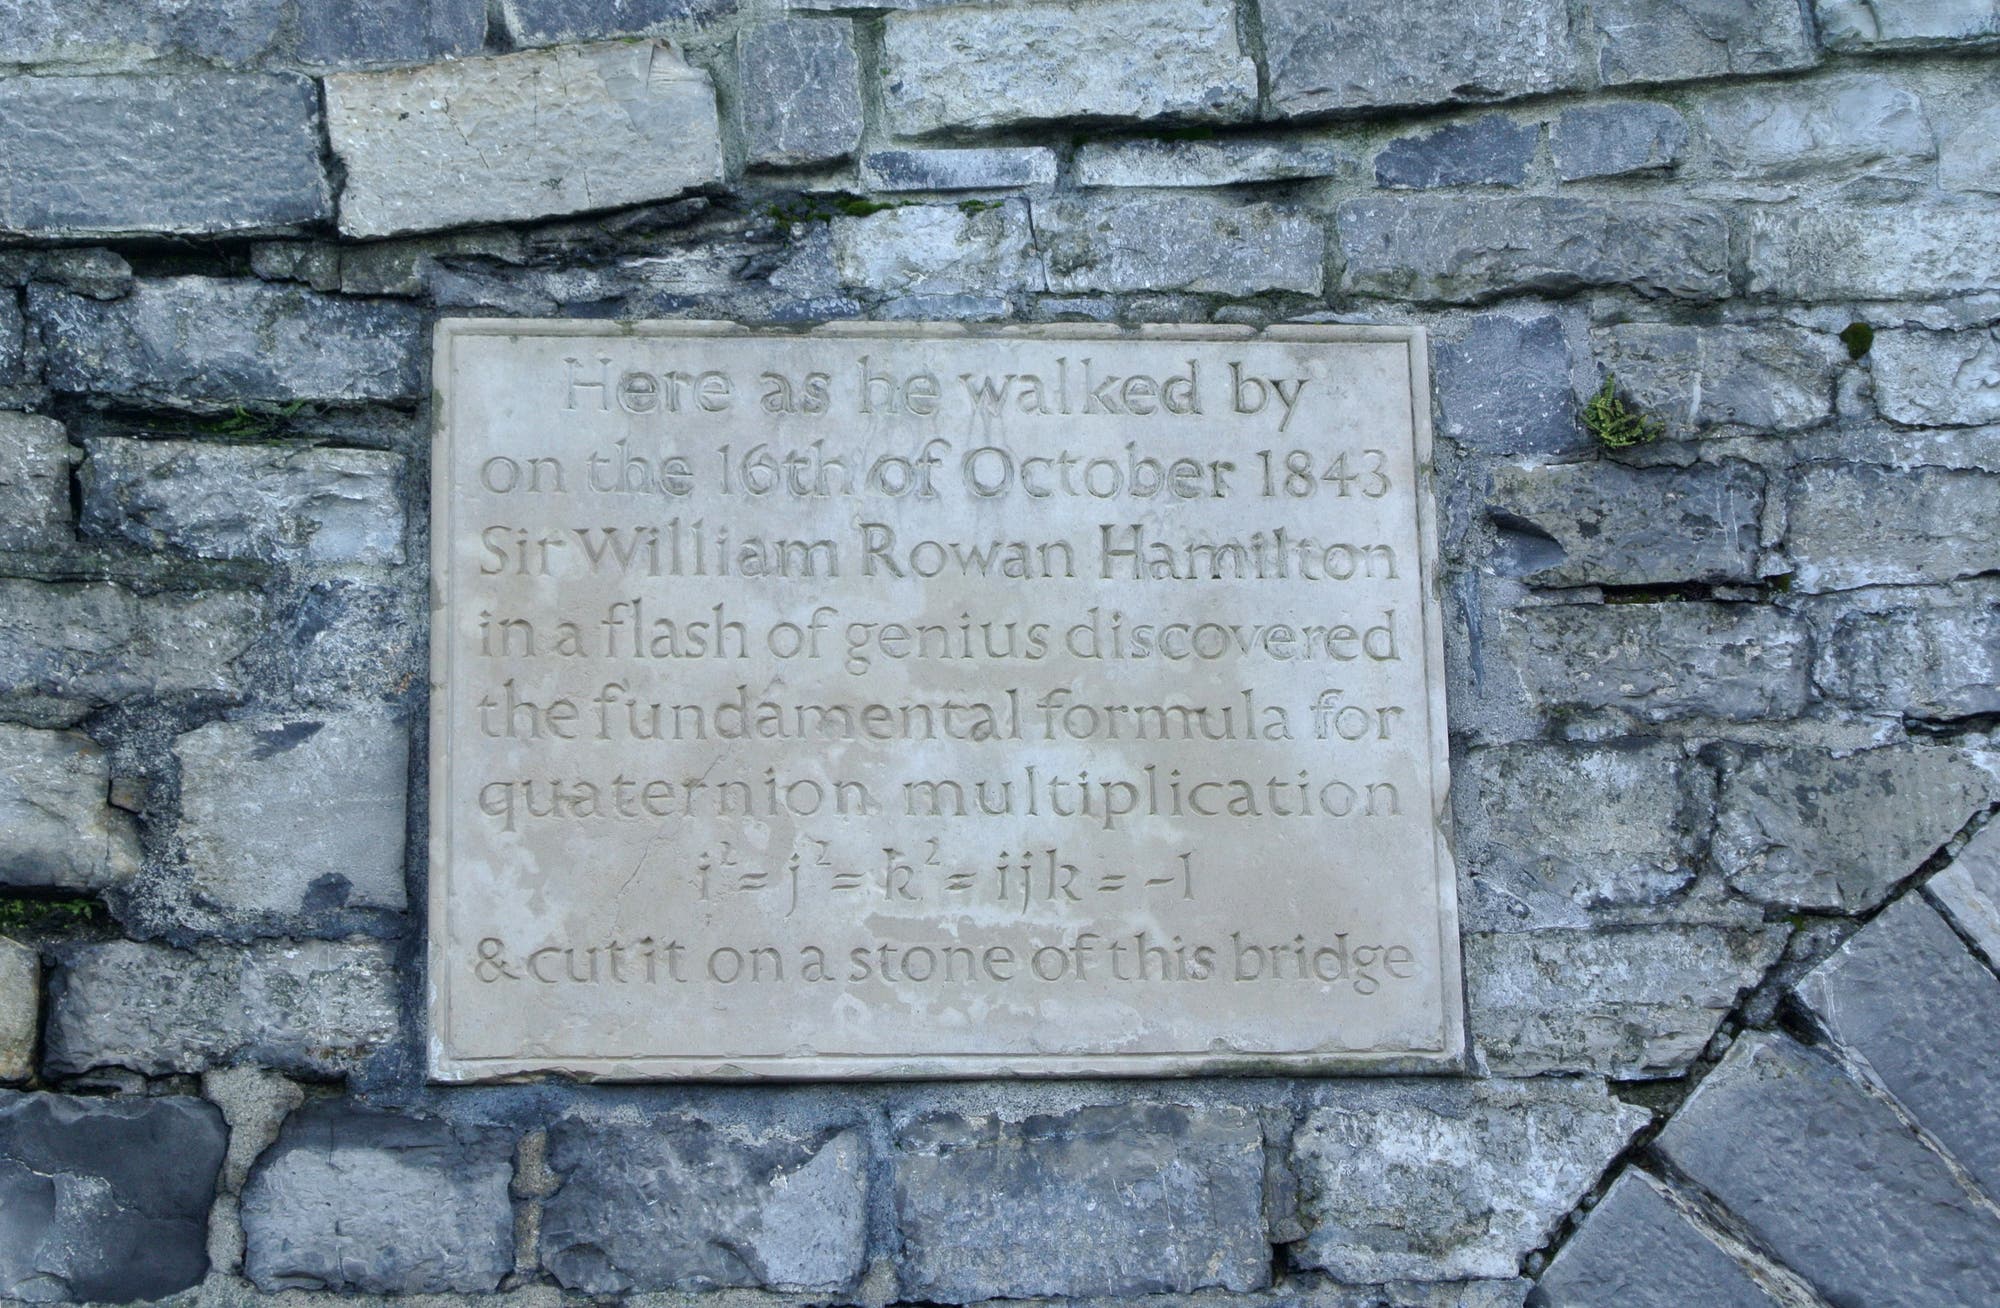 Eine Tafel an der Brücke in Dublin erinnert an Hamiltons Entdeckung.